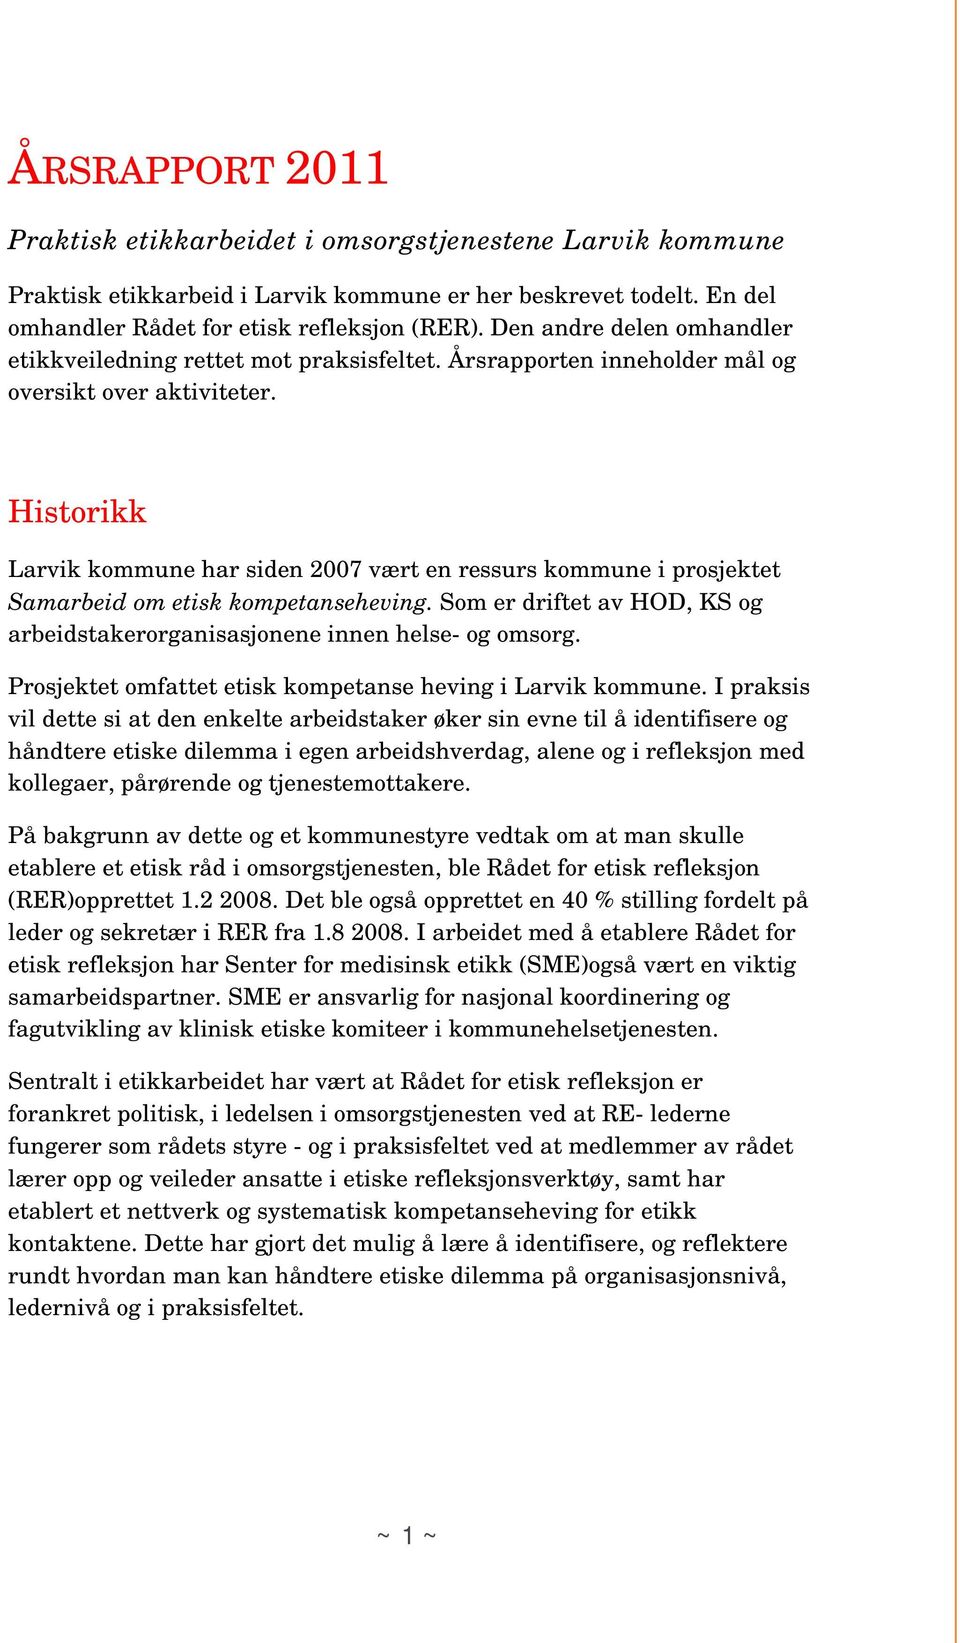 Historikk Larvik kommune har siden 2007 vært en ressurs kommune i prosjektet Samarbeid om etisk kompetanseheving. Som er driftet av HOD, KS og arbeidstakerorganisasjonene innen helse- og omsorg.